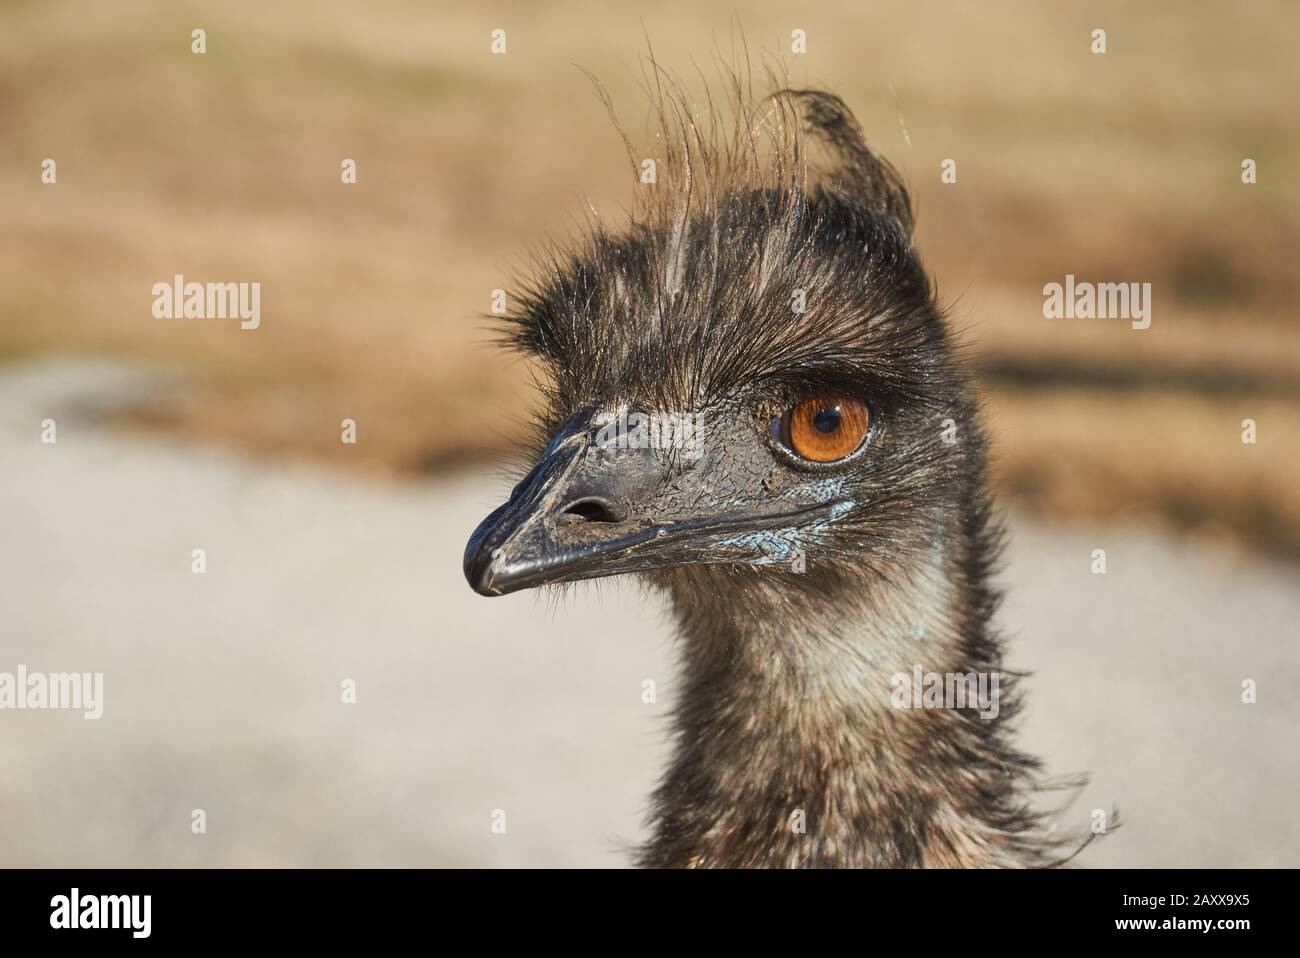 Emu Closeup Stock Photo